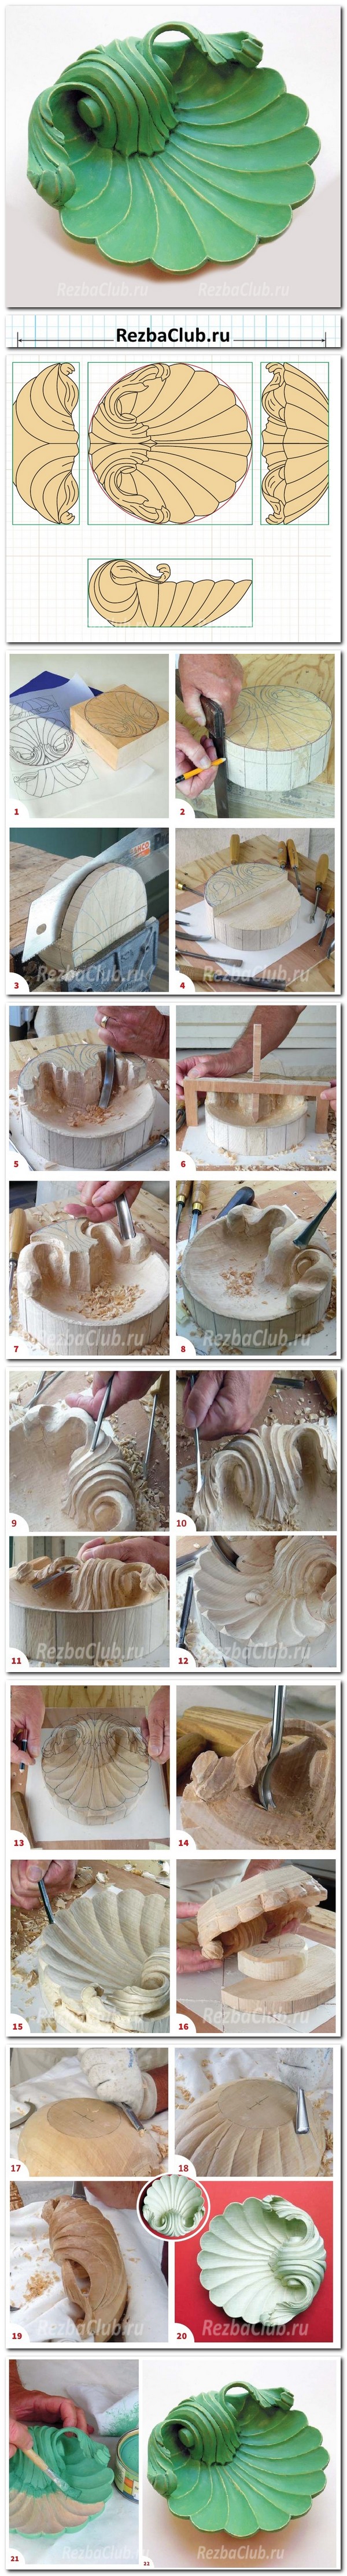 Инструкция как вырезается декоративная тарелка - ракушка